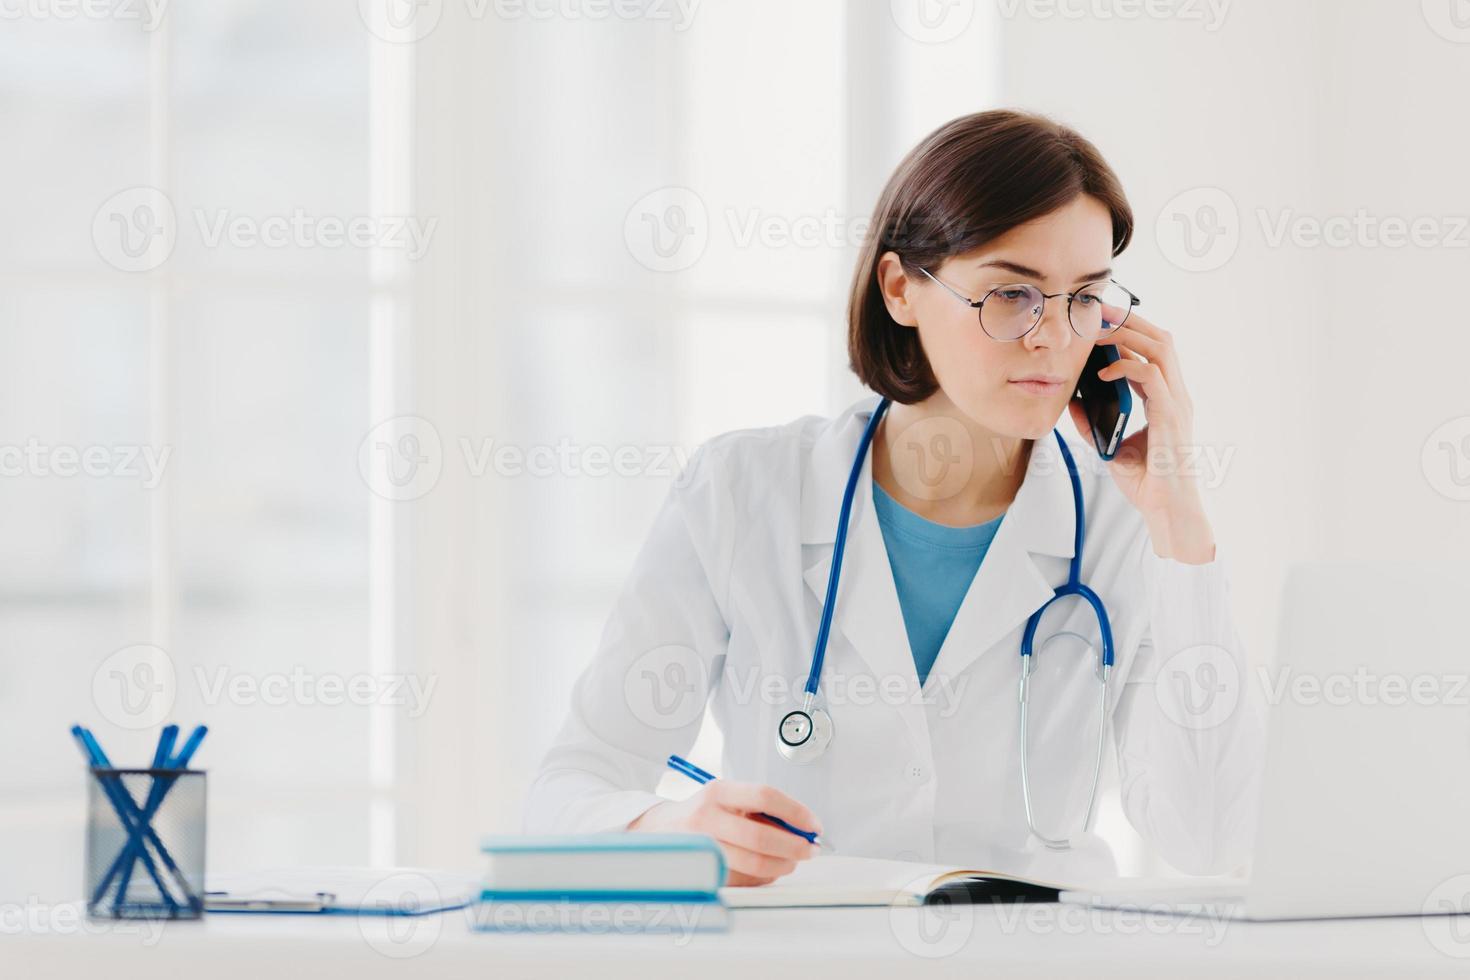 personal de salud, concepto de medicina. una doctora morena seria enfocada en una computadora portátil moderna, reescribe la información necesaria, habla por teléfono móvil, llama a alguien, tiene una mirada seria foto